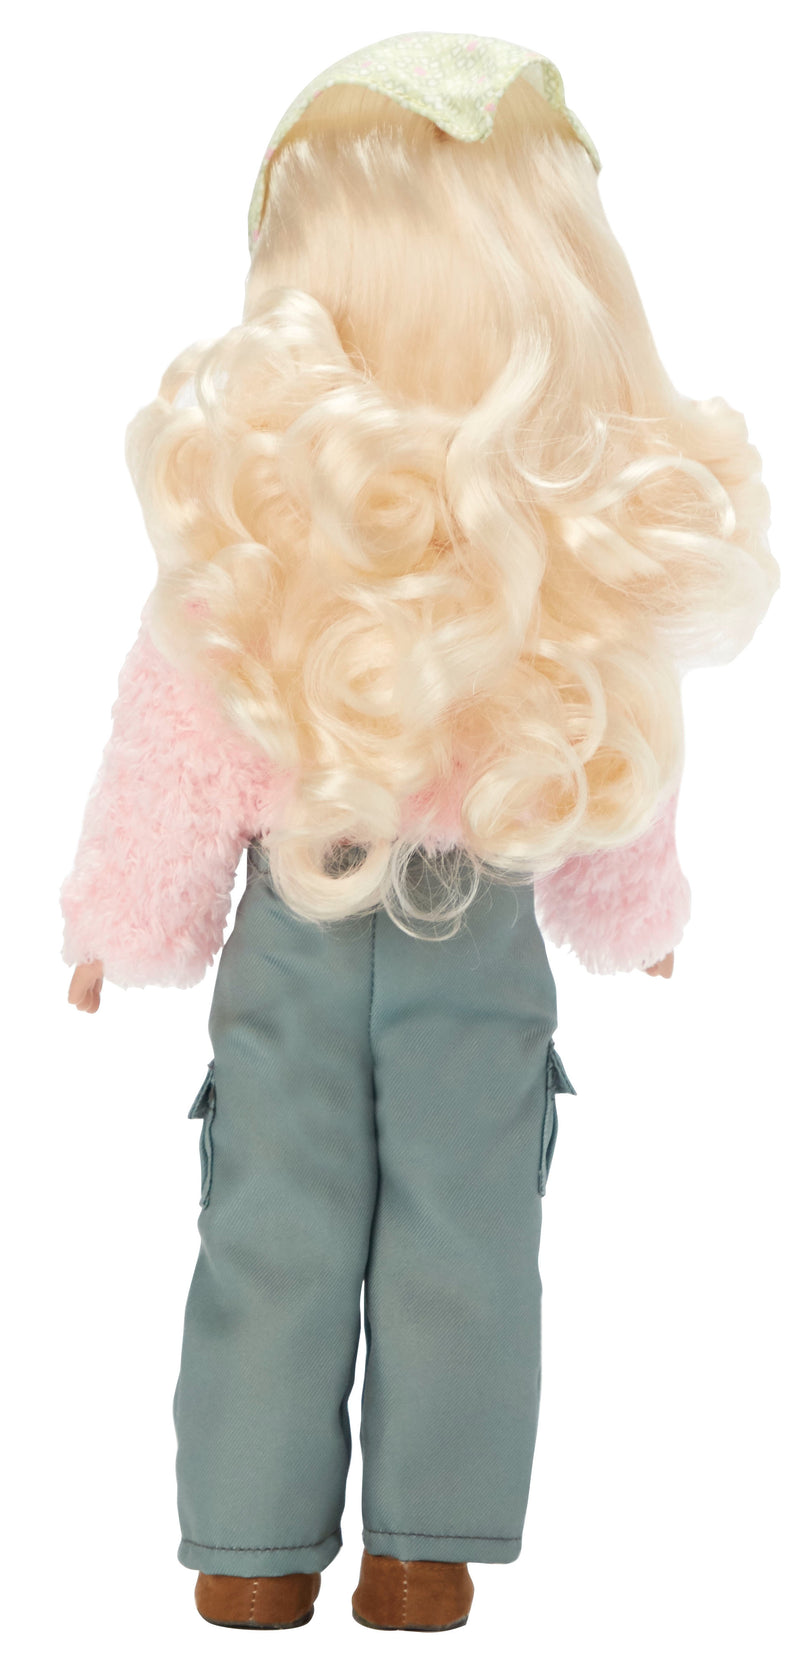 Avi - 14" Alexander Girlz Play Doll, Light Skin Tone, Blue Eyes, Blonde Hair!  New for 2024!  In Stock!